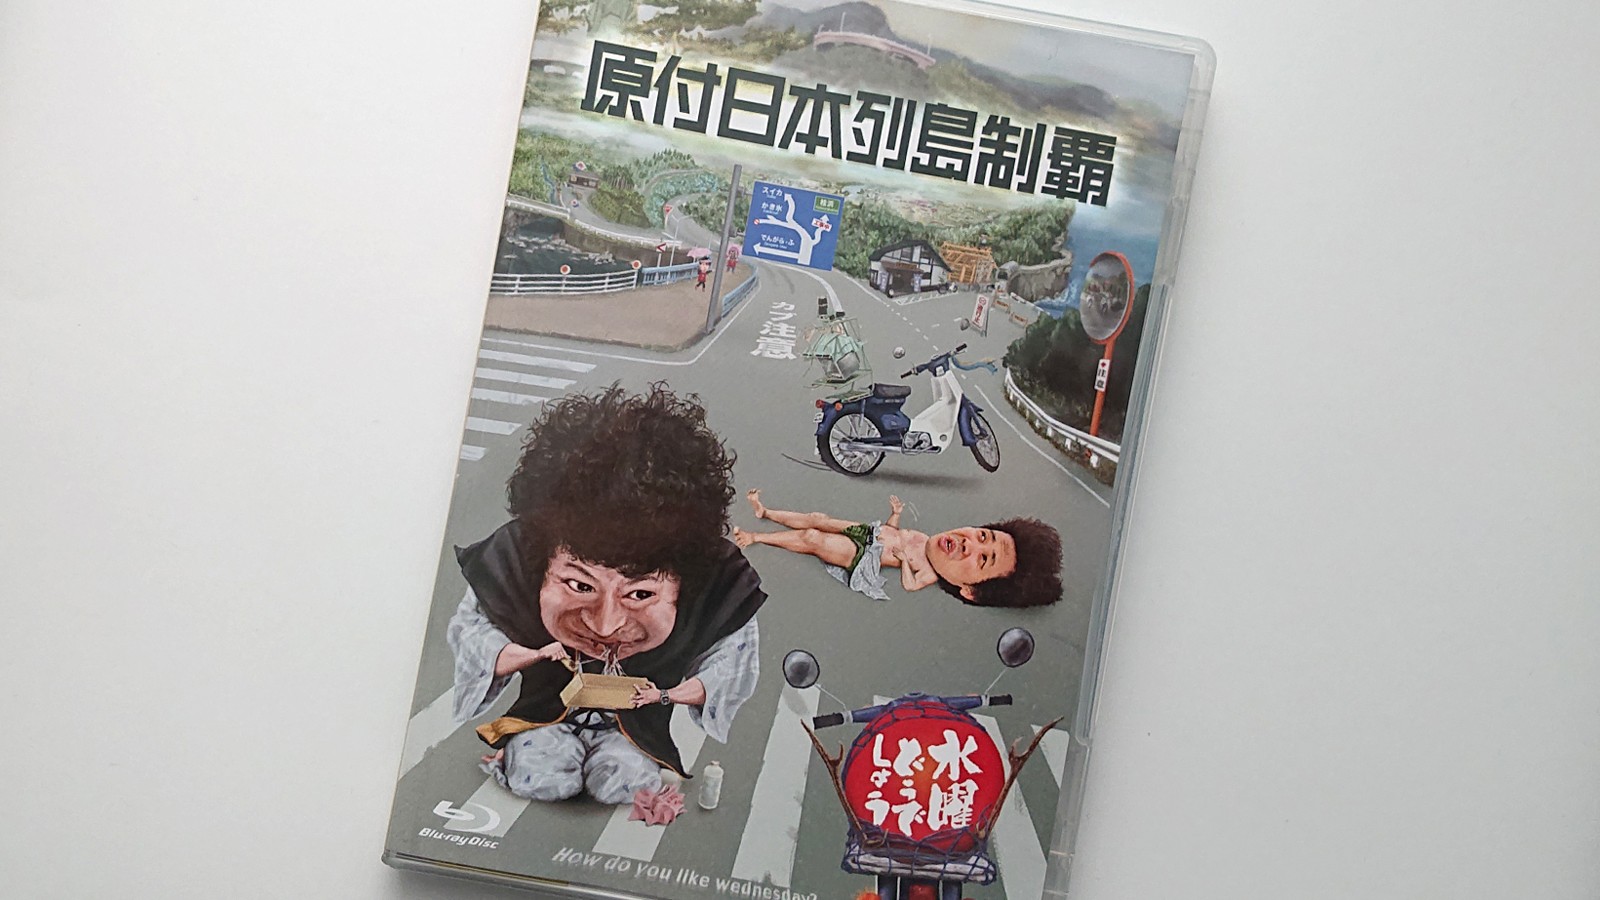 水曜どうでしょう第29弾dvd Blu Ray 原付日本列島制覇 のセリフを 文字 にしてみました Buzzbirdのdvd Lab Dvdラボ